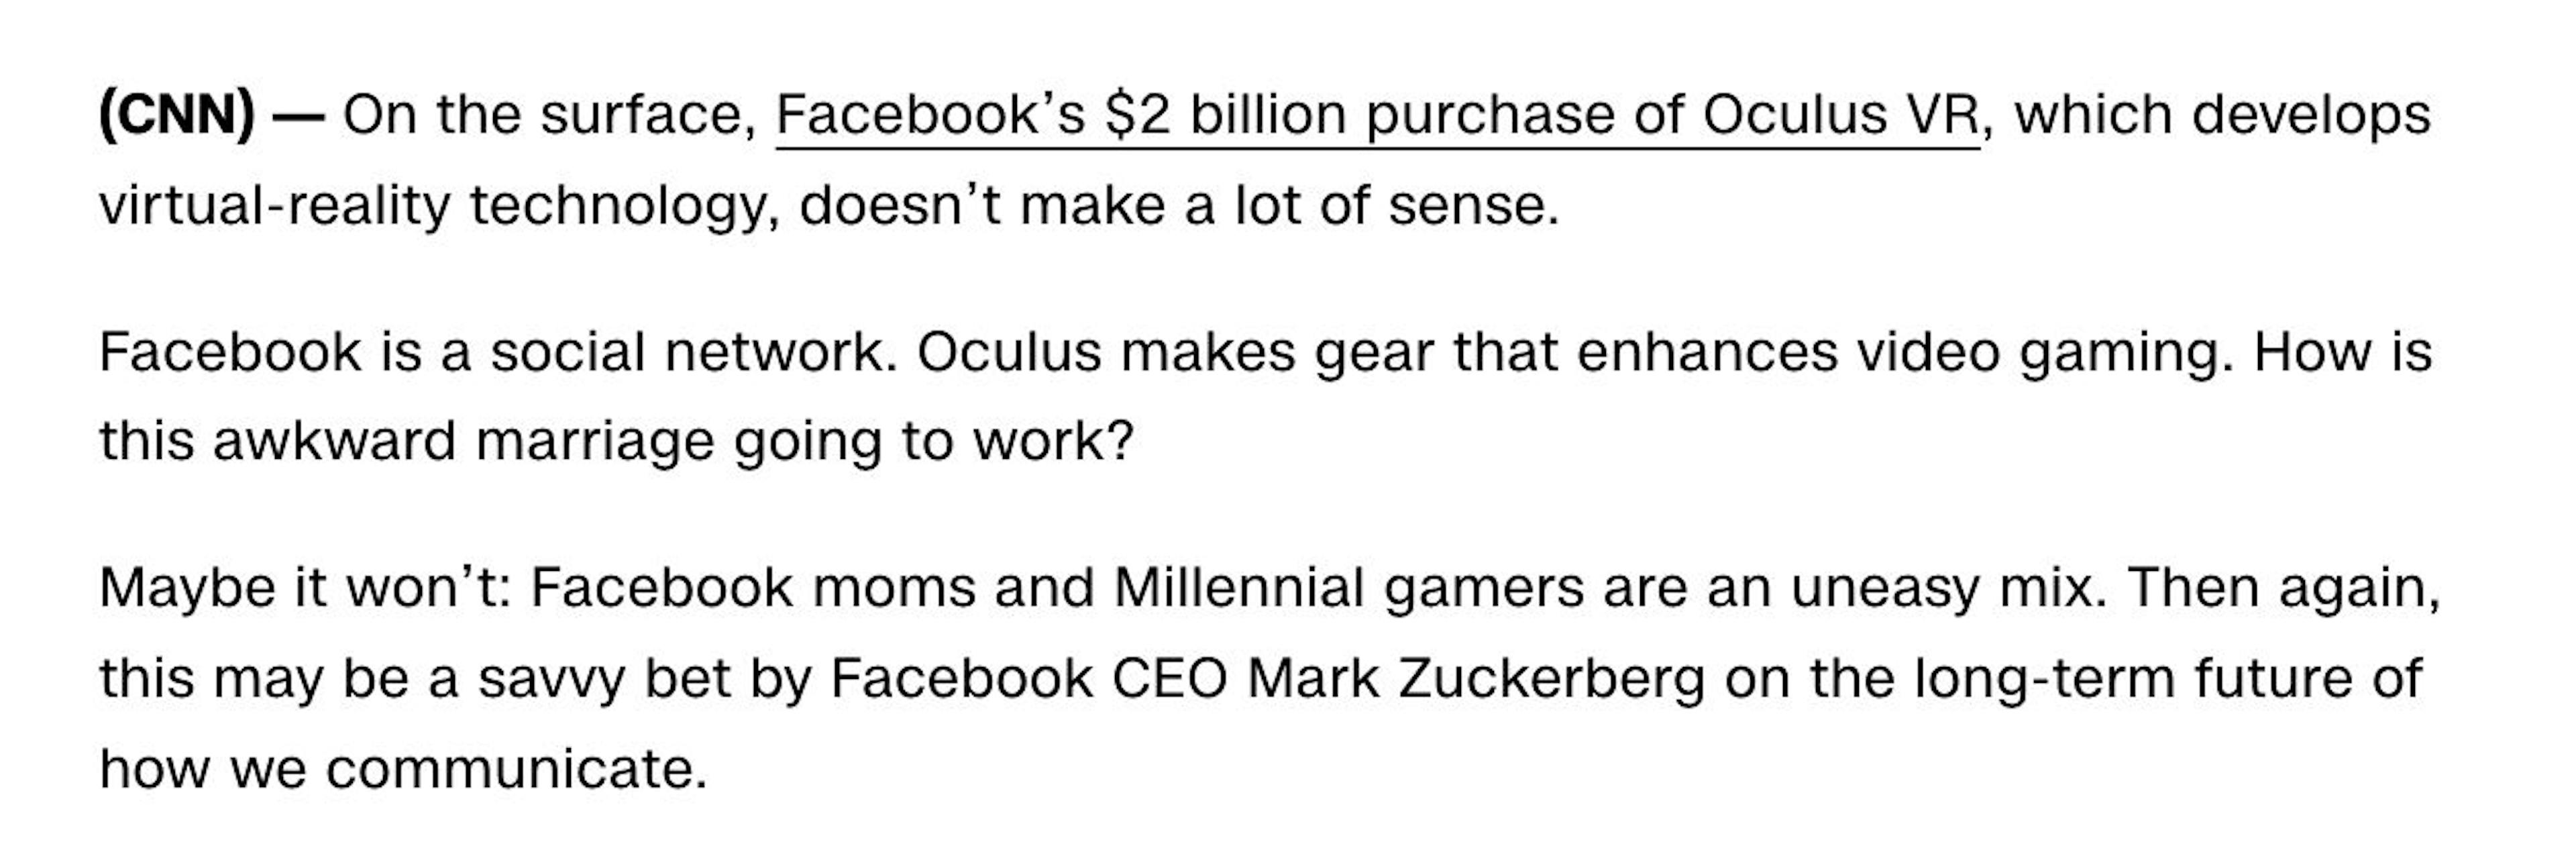 De "O que é o Oculus VR e por que o Facebook pagou US$ 2 bilhões por ele?" publicado em 26/03/2014